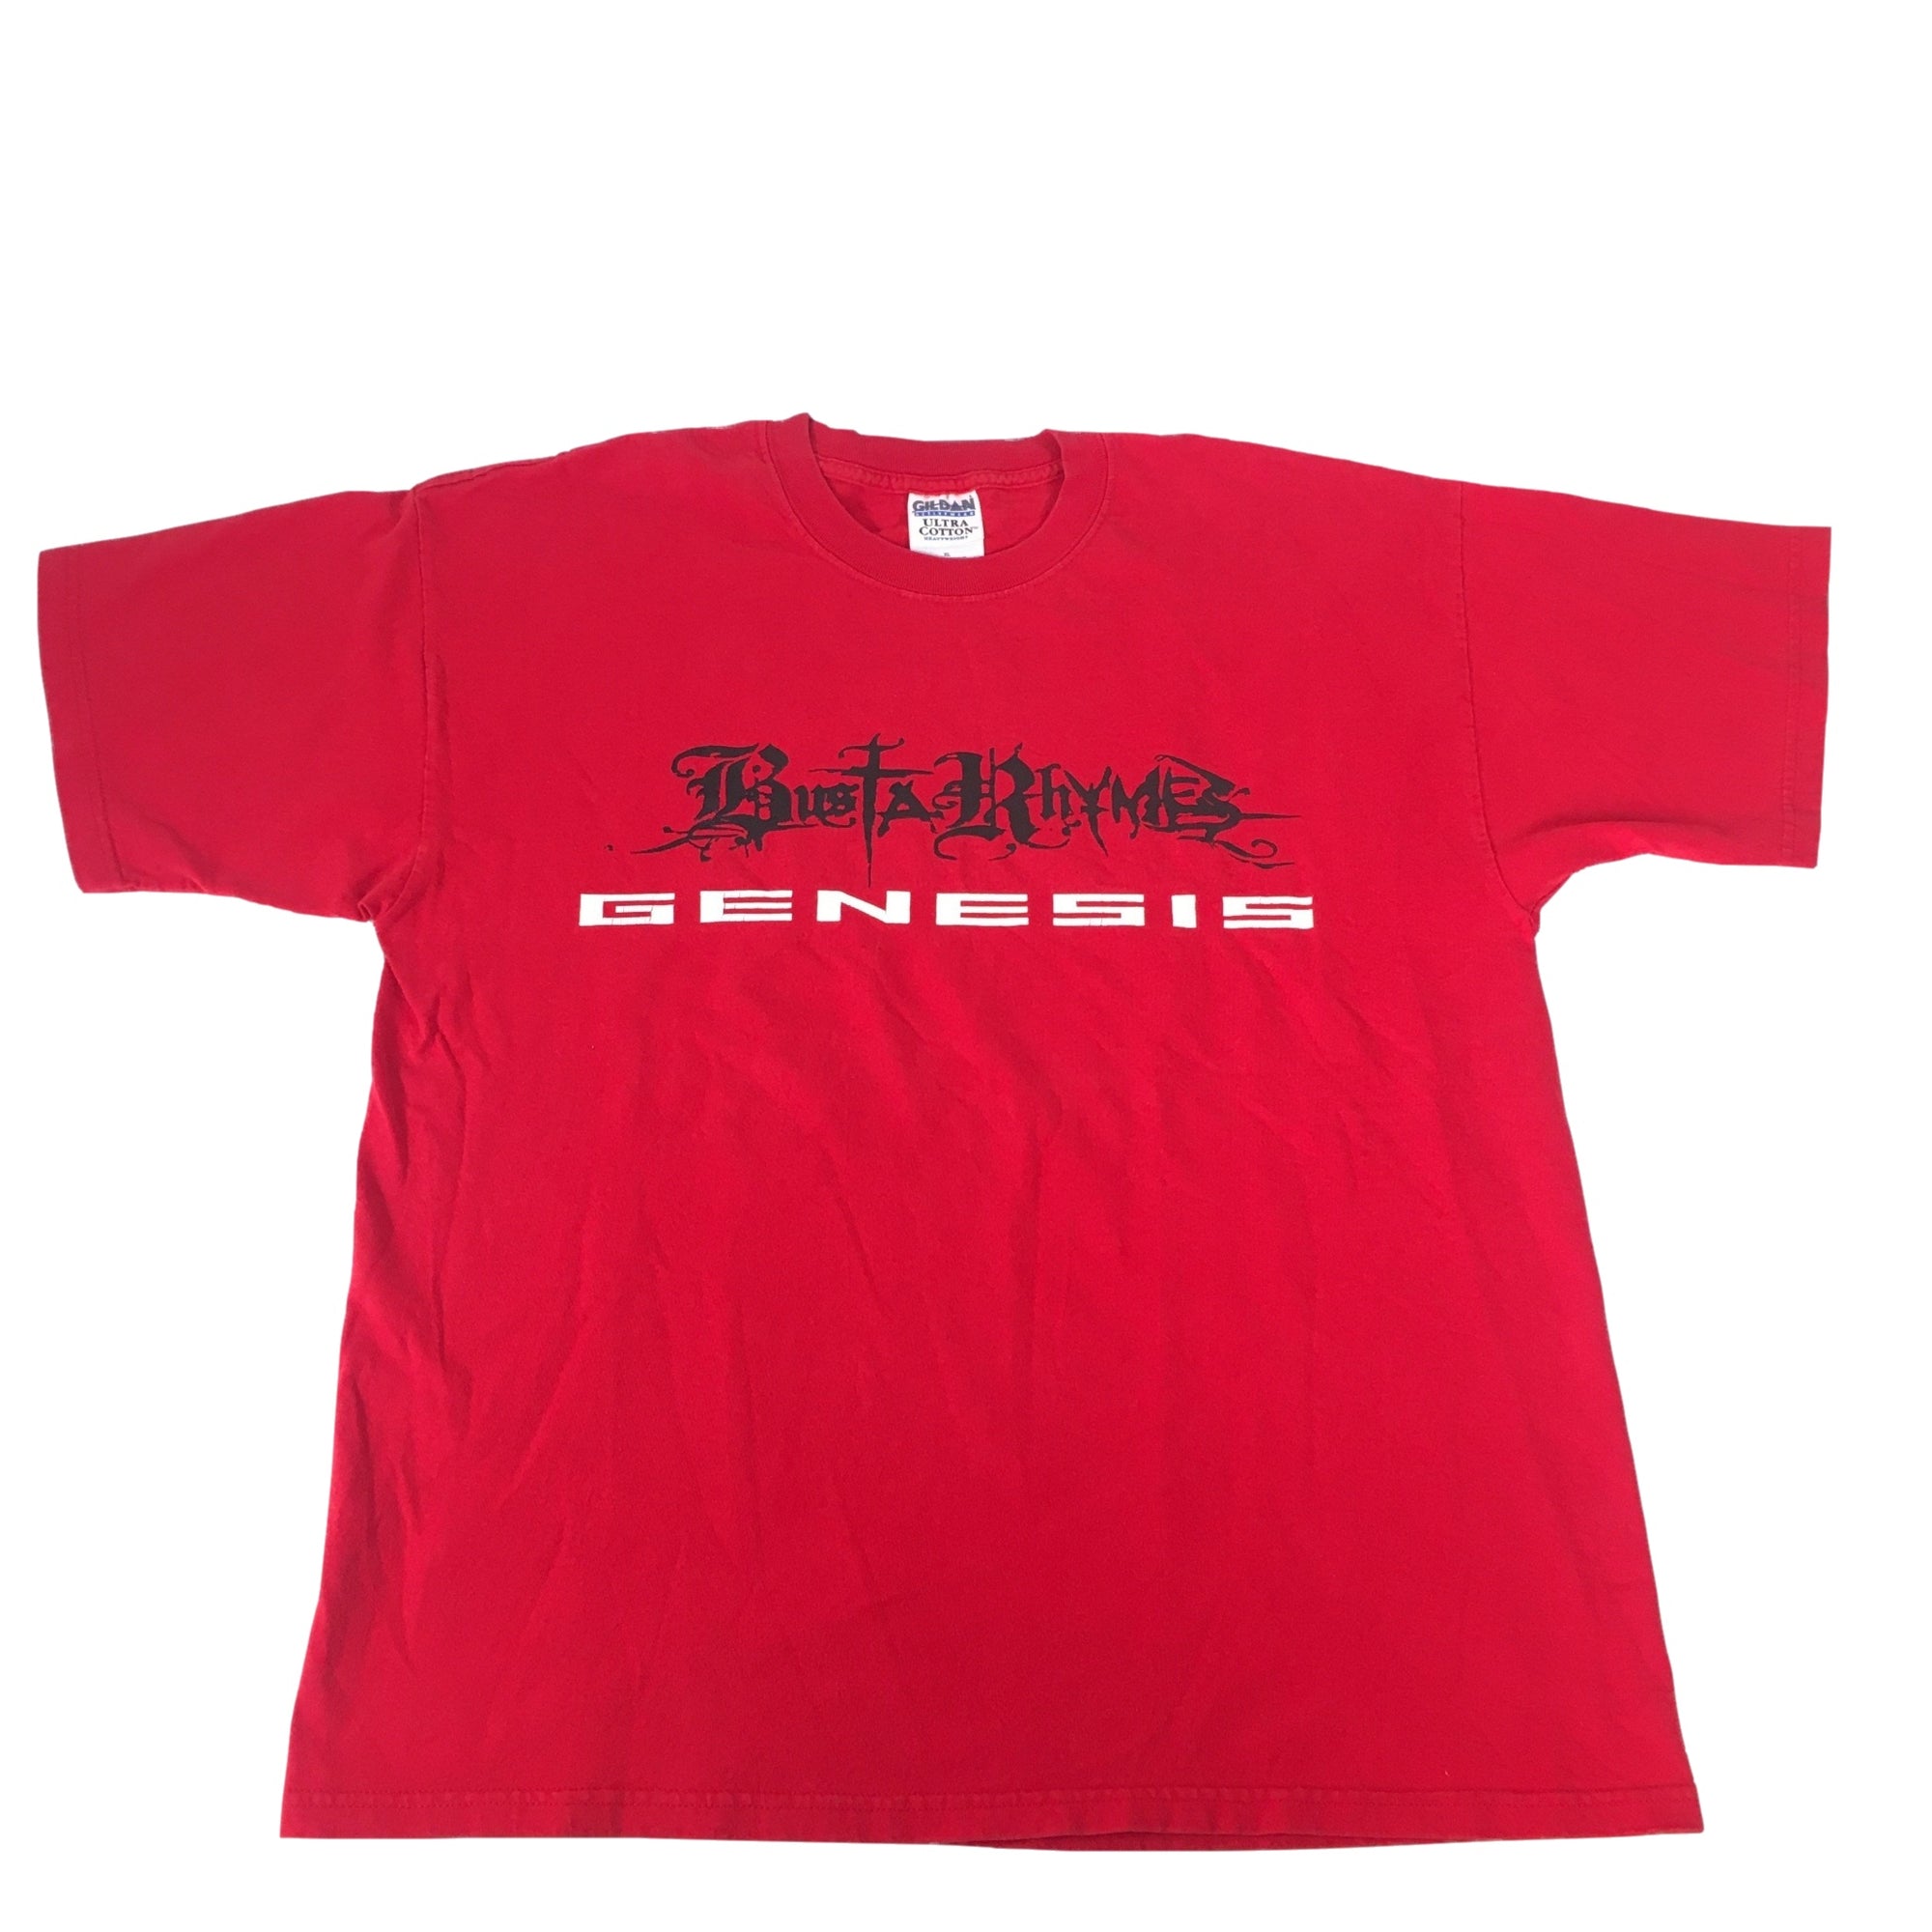 Vintage Busta Rhymes "Genesis" T-Shirt - jointcustodydc